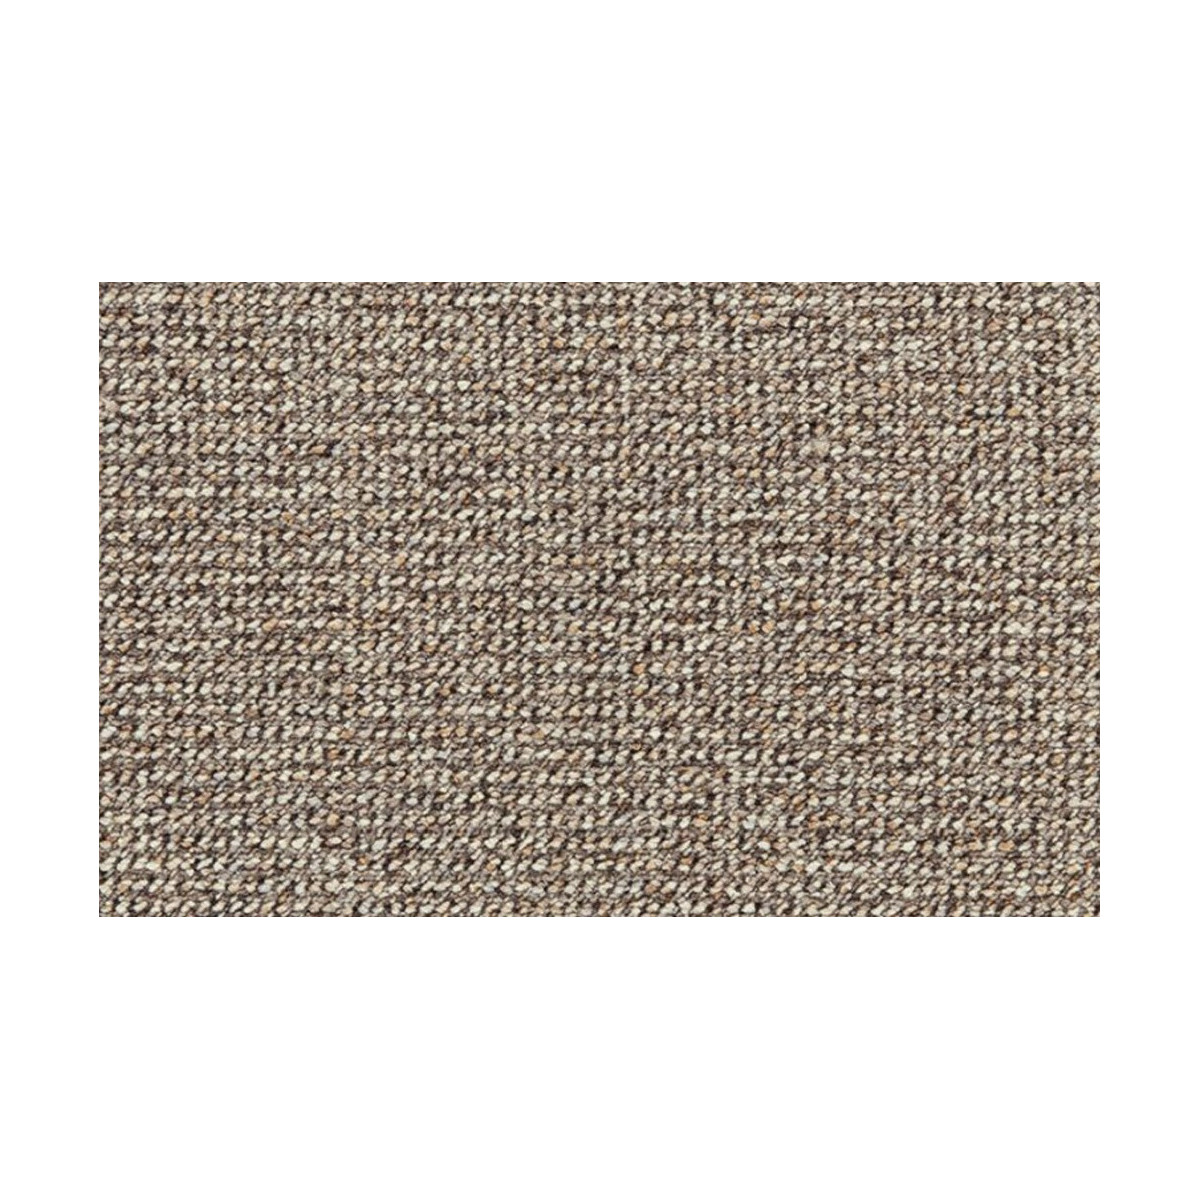 Metrážový koberec Tweed 93, zátěžový